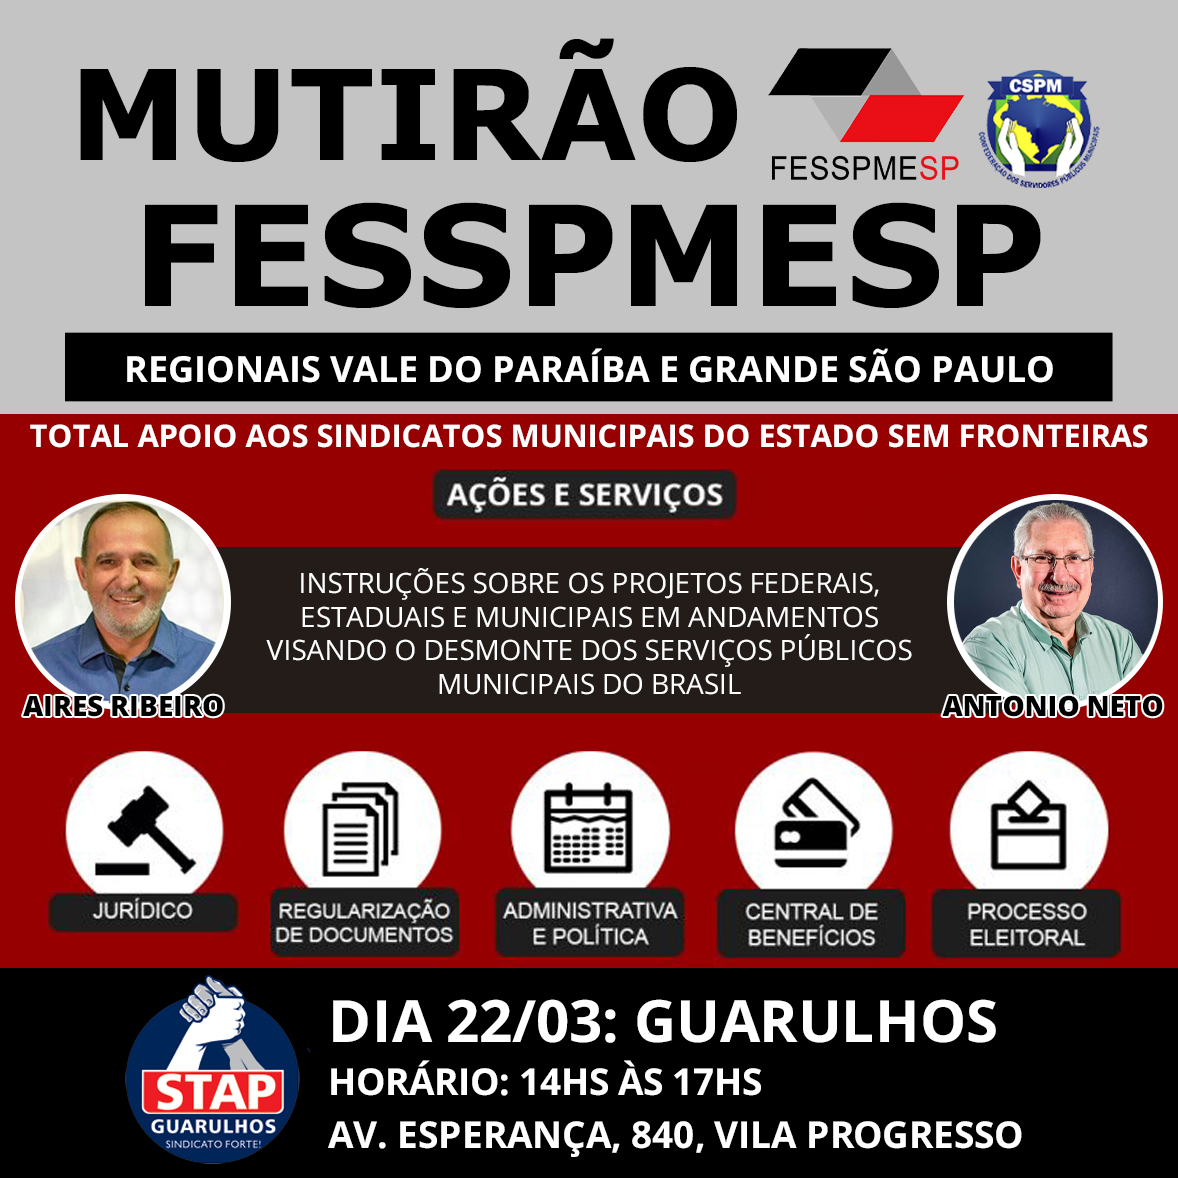 FESSPMESP divulga o próximo Mutirão presencial, dia 22/03 em Guarulhos